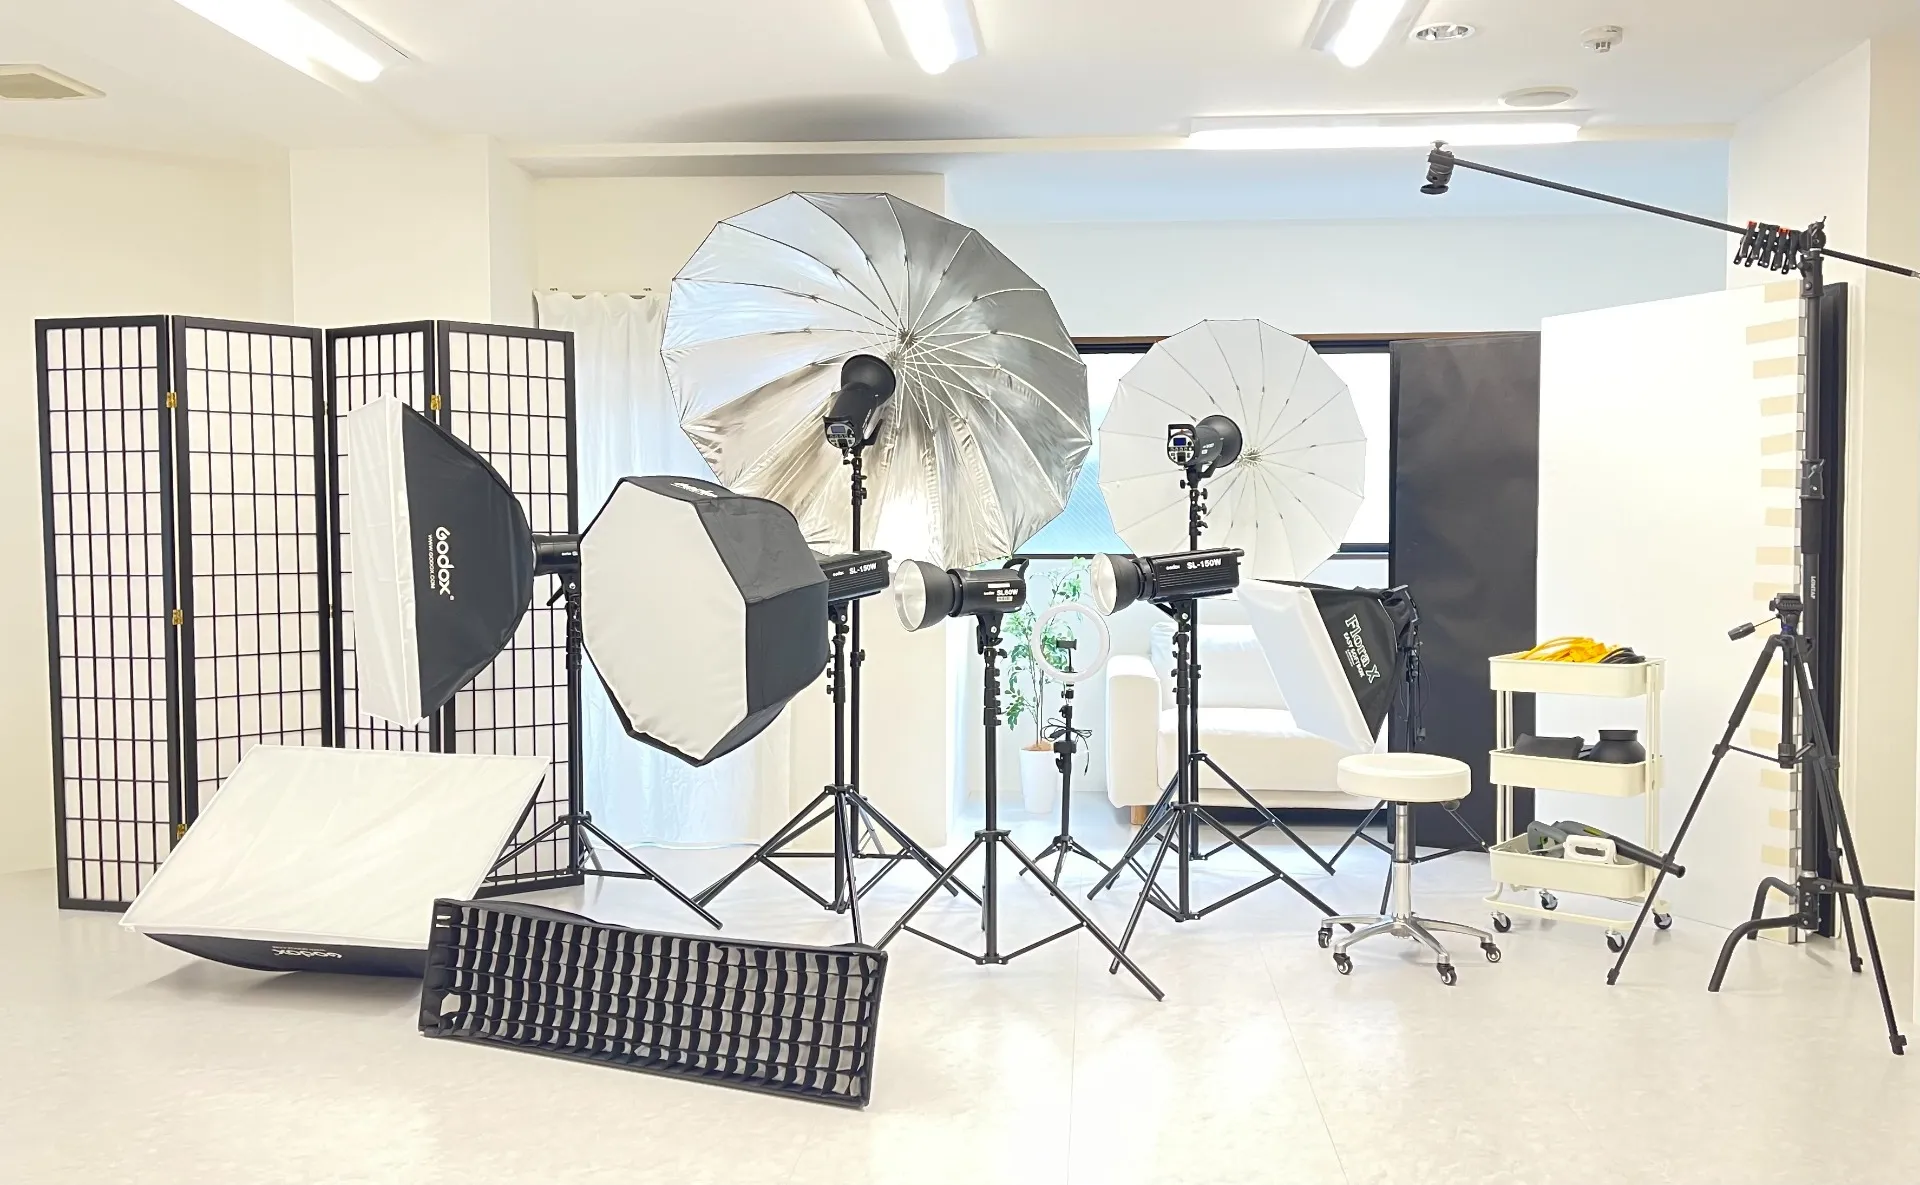 神戸元町にある撮影スタジオ＆セルフ写真館STUDIO ZEALです。